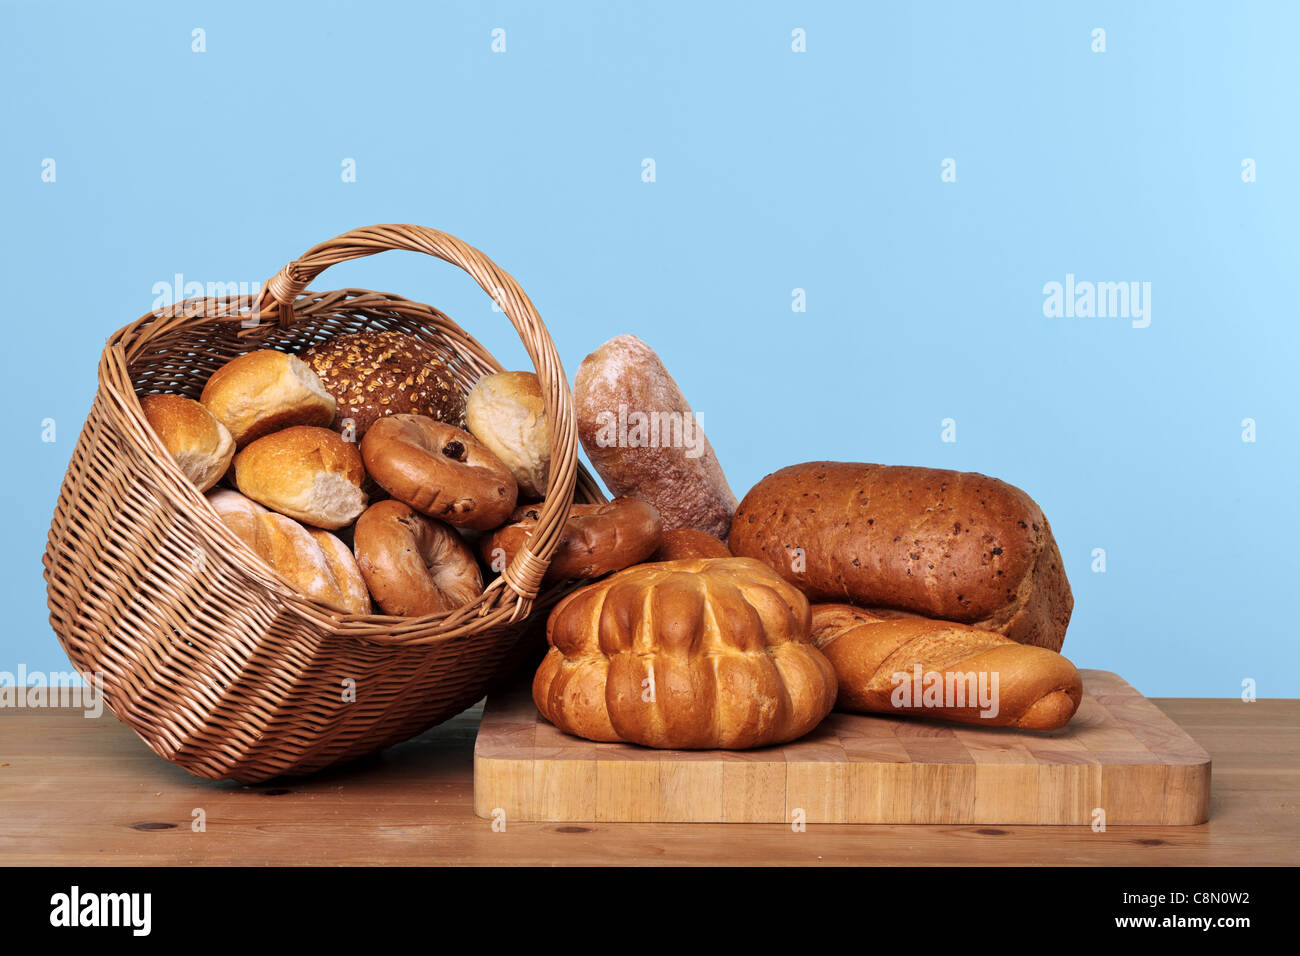 Photo de différents types de pains et de petits pains dans un panier en osier sur une table en bois avec fond bleu. Banque D'Images